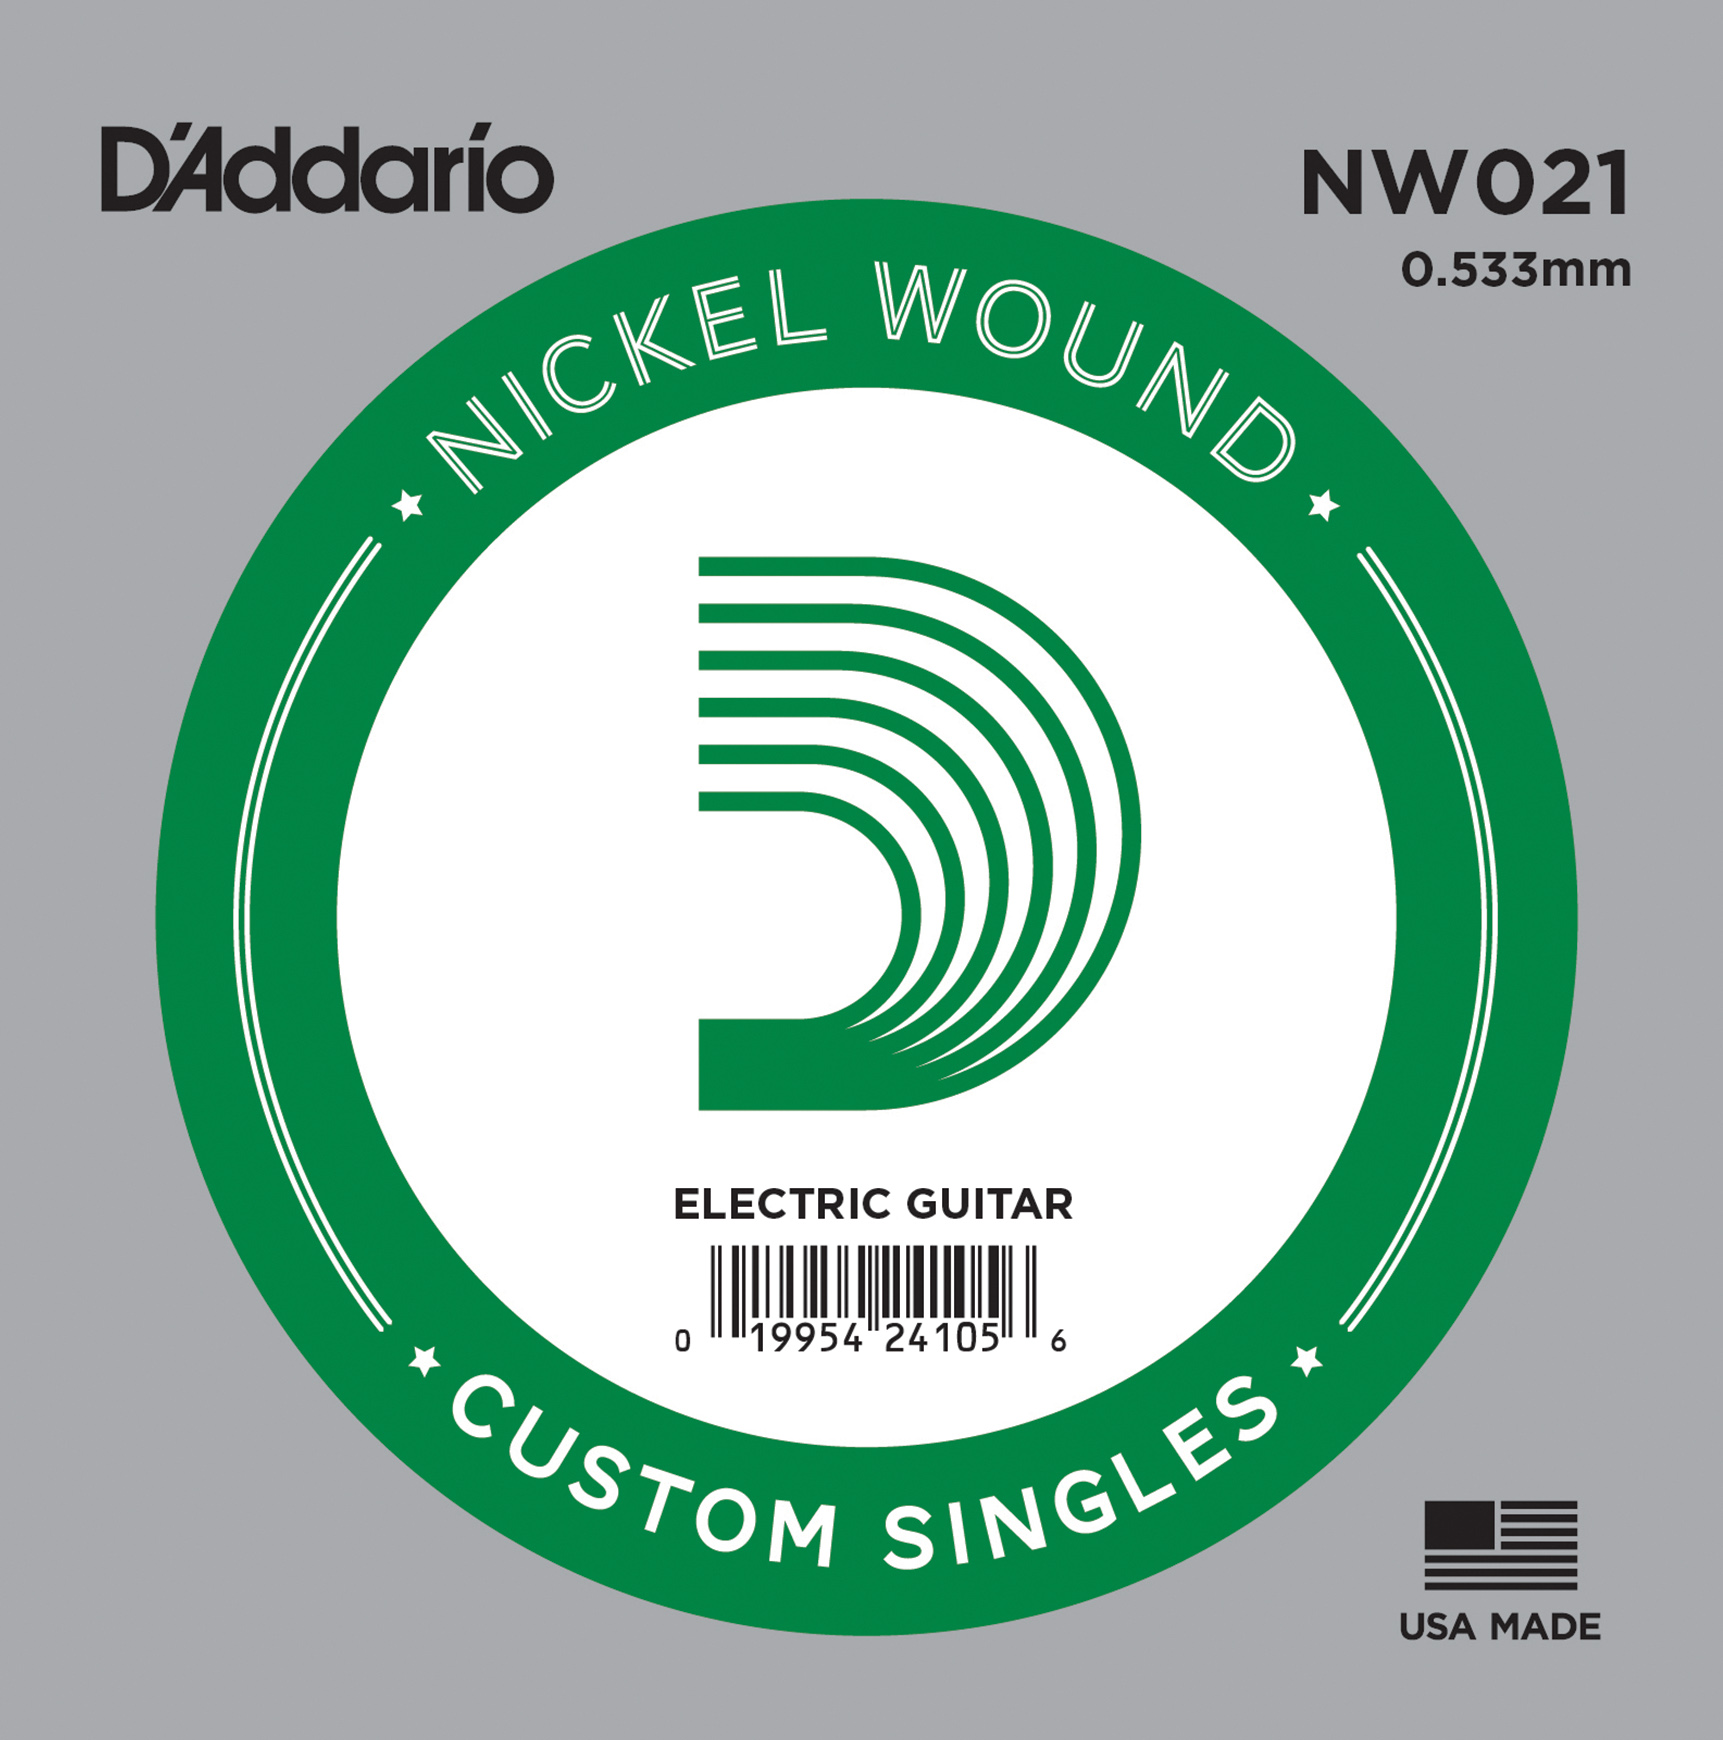 NW021 Nickel Round Wound 21